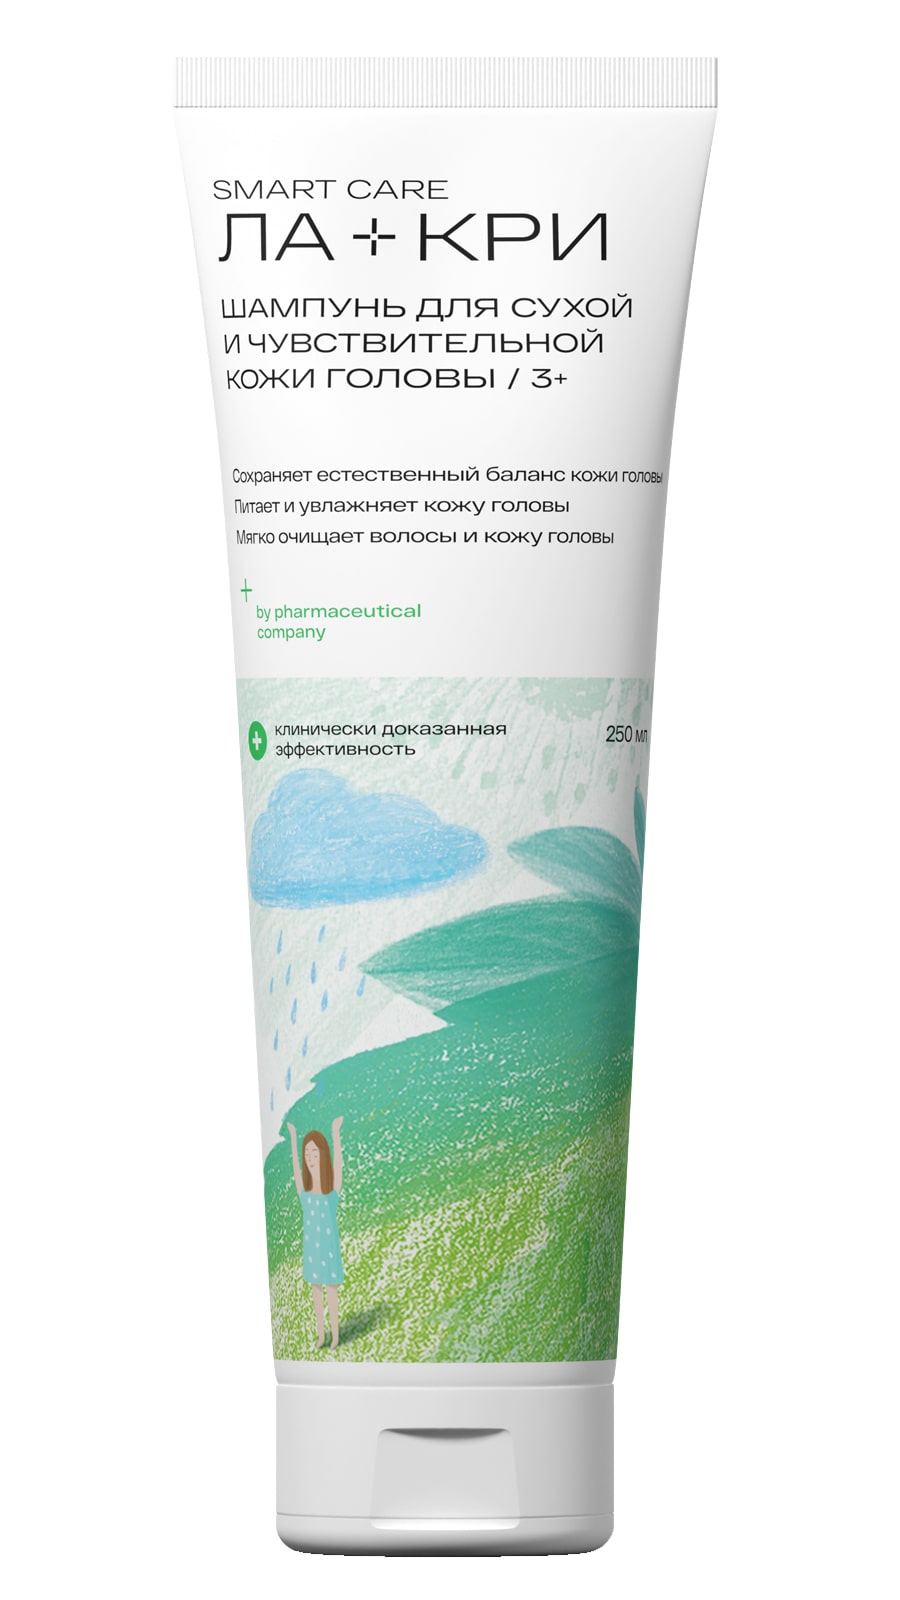 Ла-Кри Шампунь для сухой и чувствительной кожи головы 3+, 250 мл (Ла-Кри, Smart Care) ла кри шампунь для сухой чувствительной кожи 250 мл